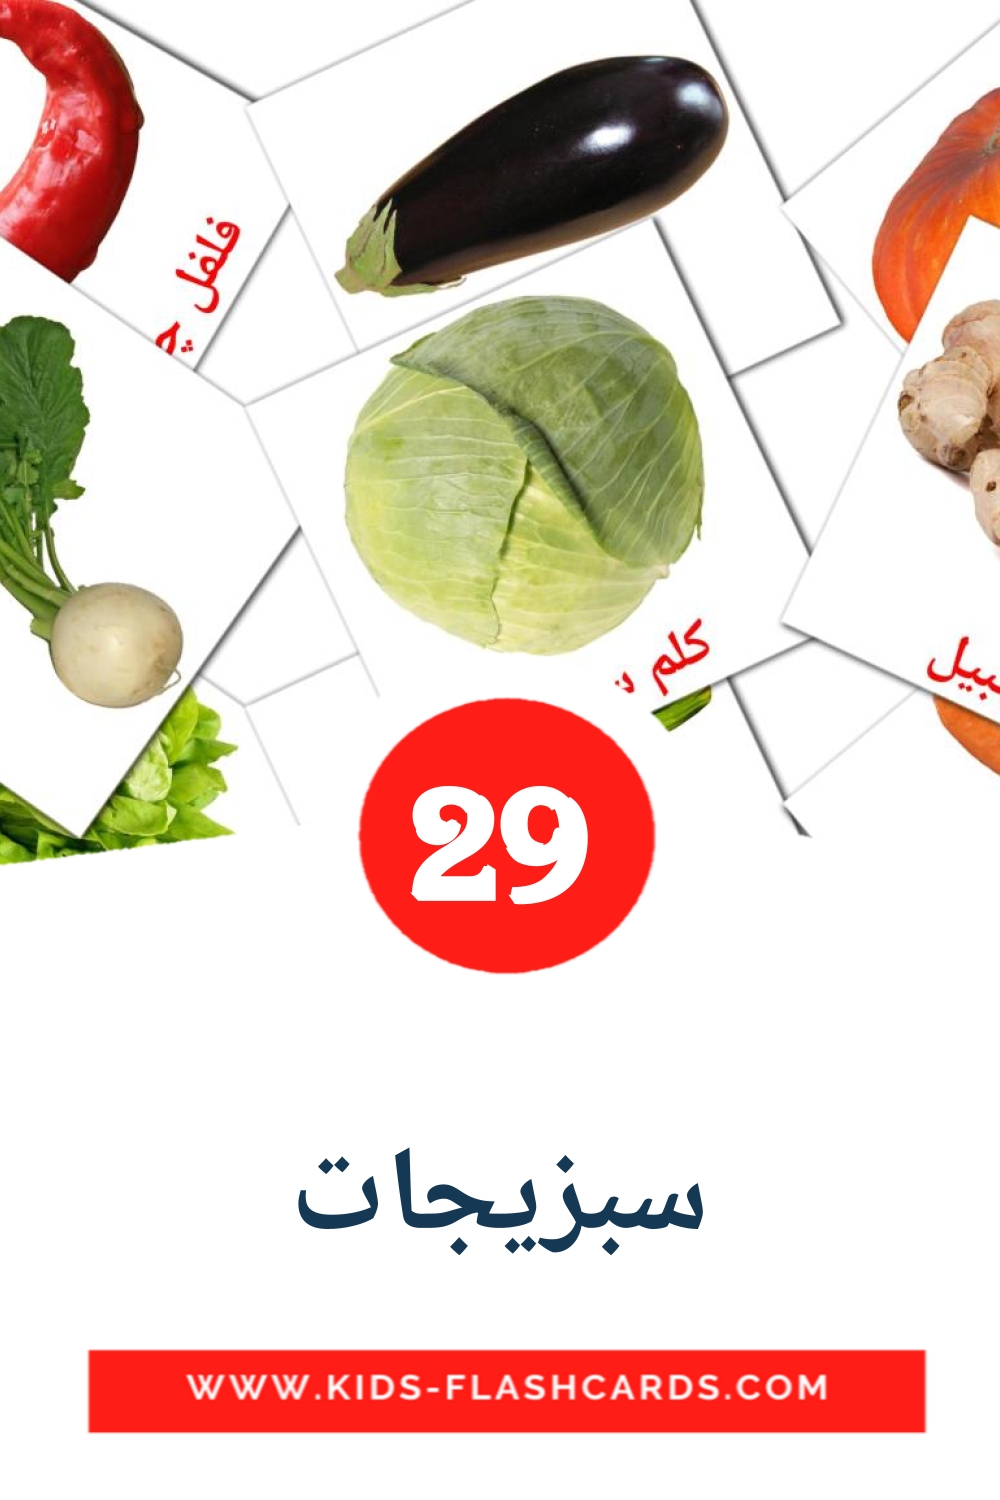 29 carte illustrate di سبزیجات per la scuola materna in persiano